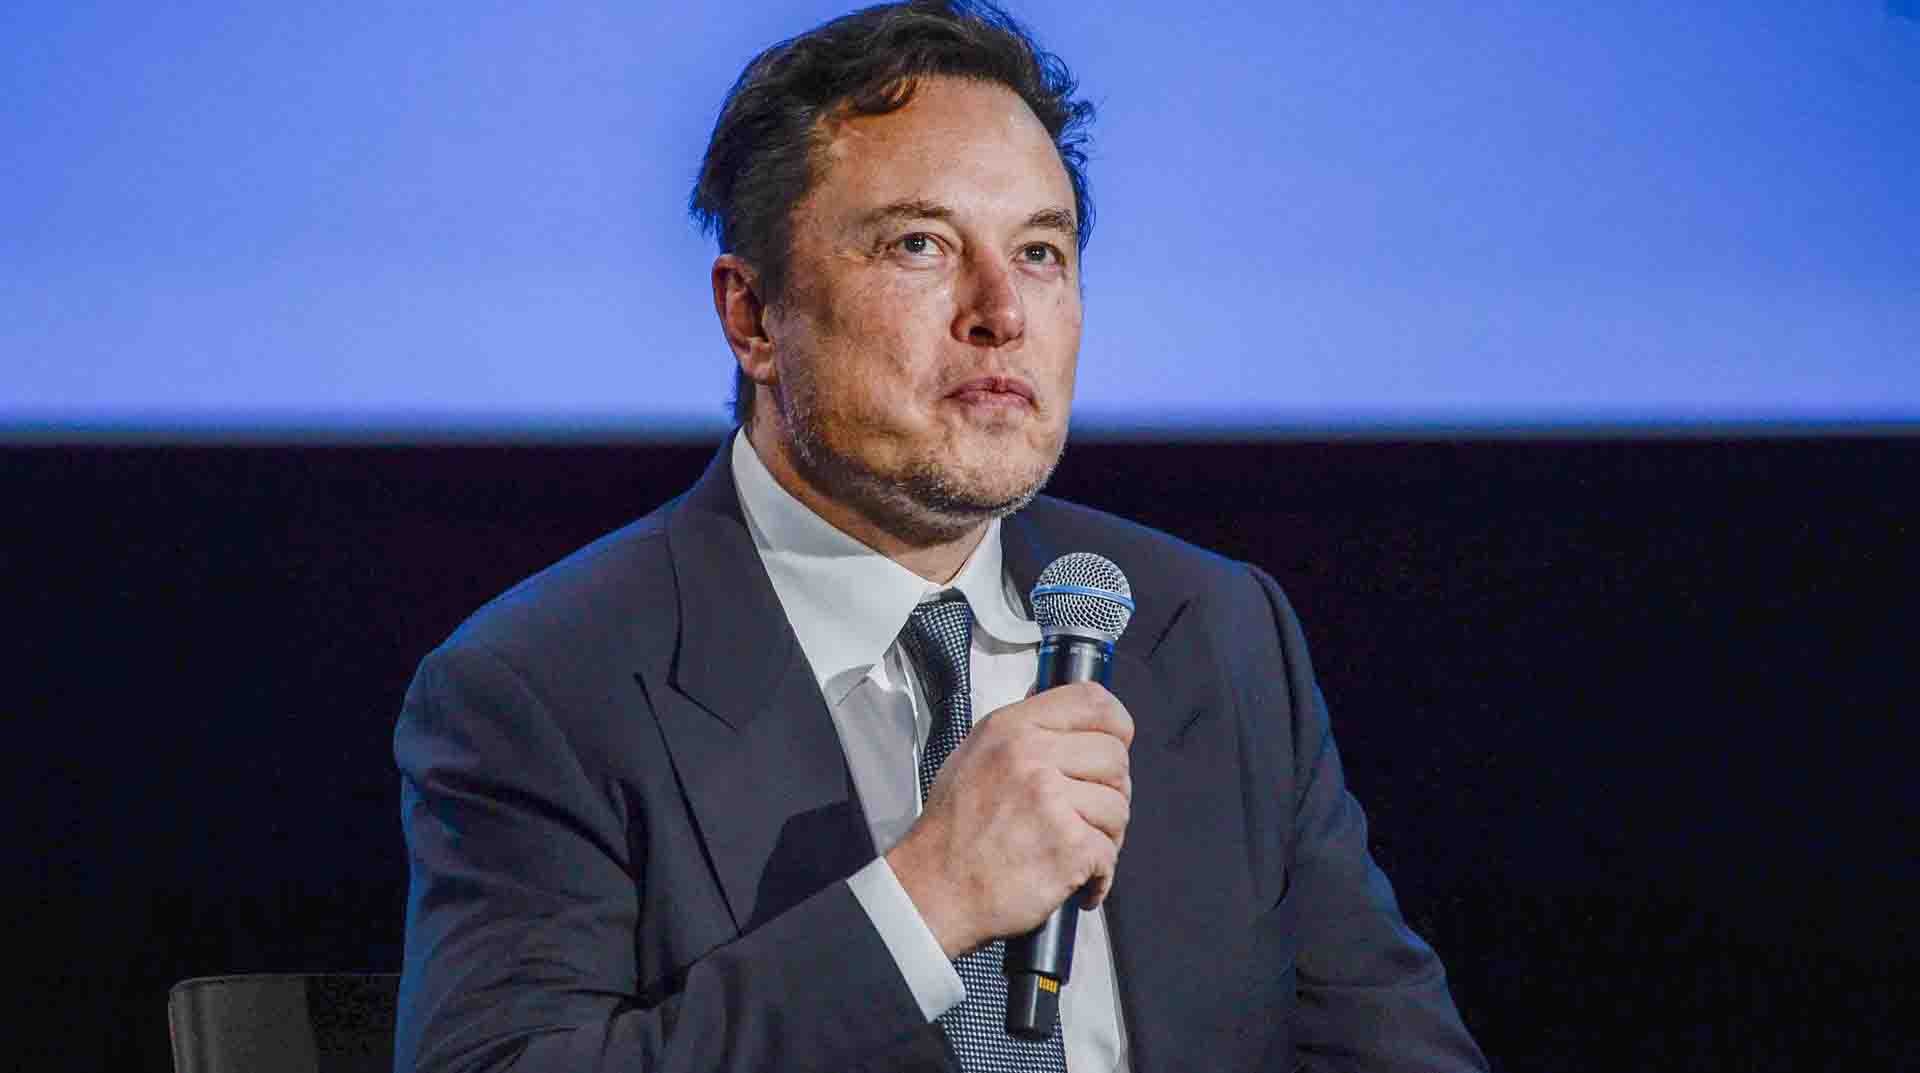 El multimillonario Elon Musk anunciará este viernes, 4 de noviembre, despidos masivos en Twitter, en uno de los primeros pasos por hacer una revisión de la empresa. Foto: EFE